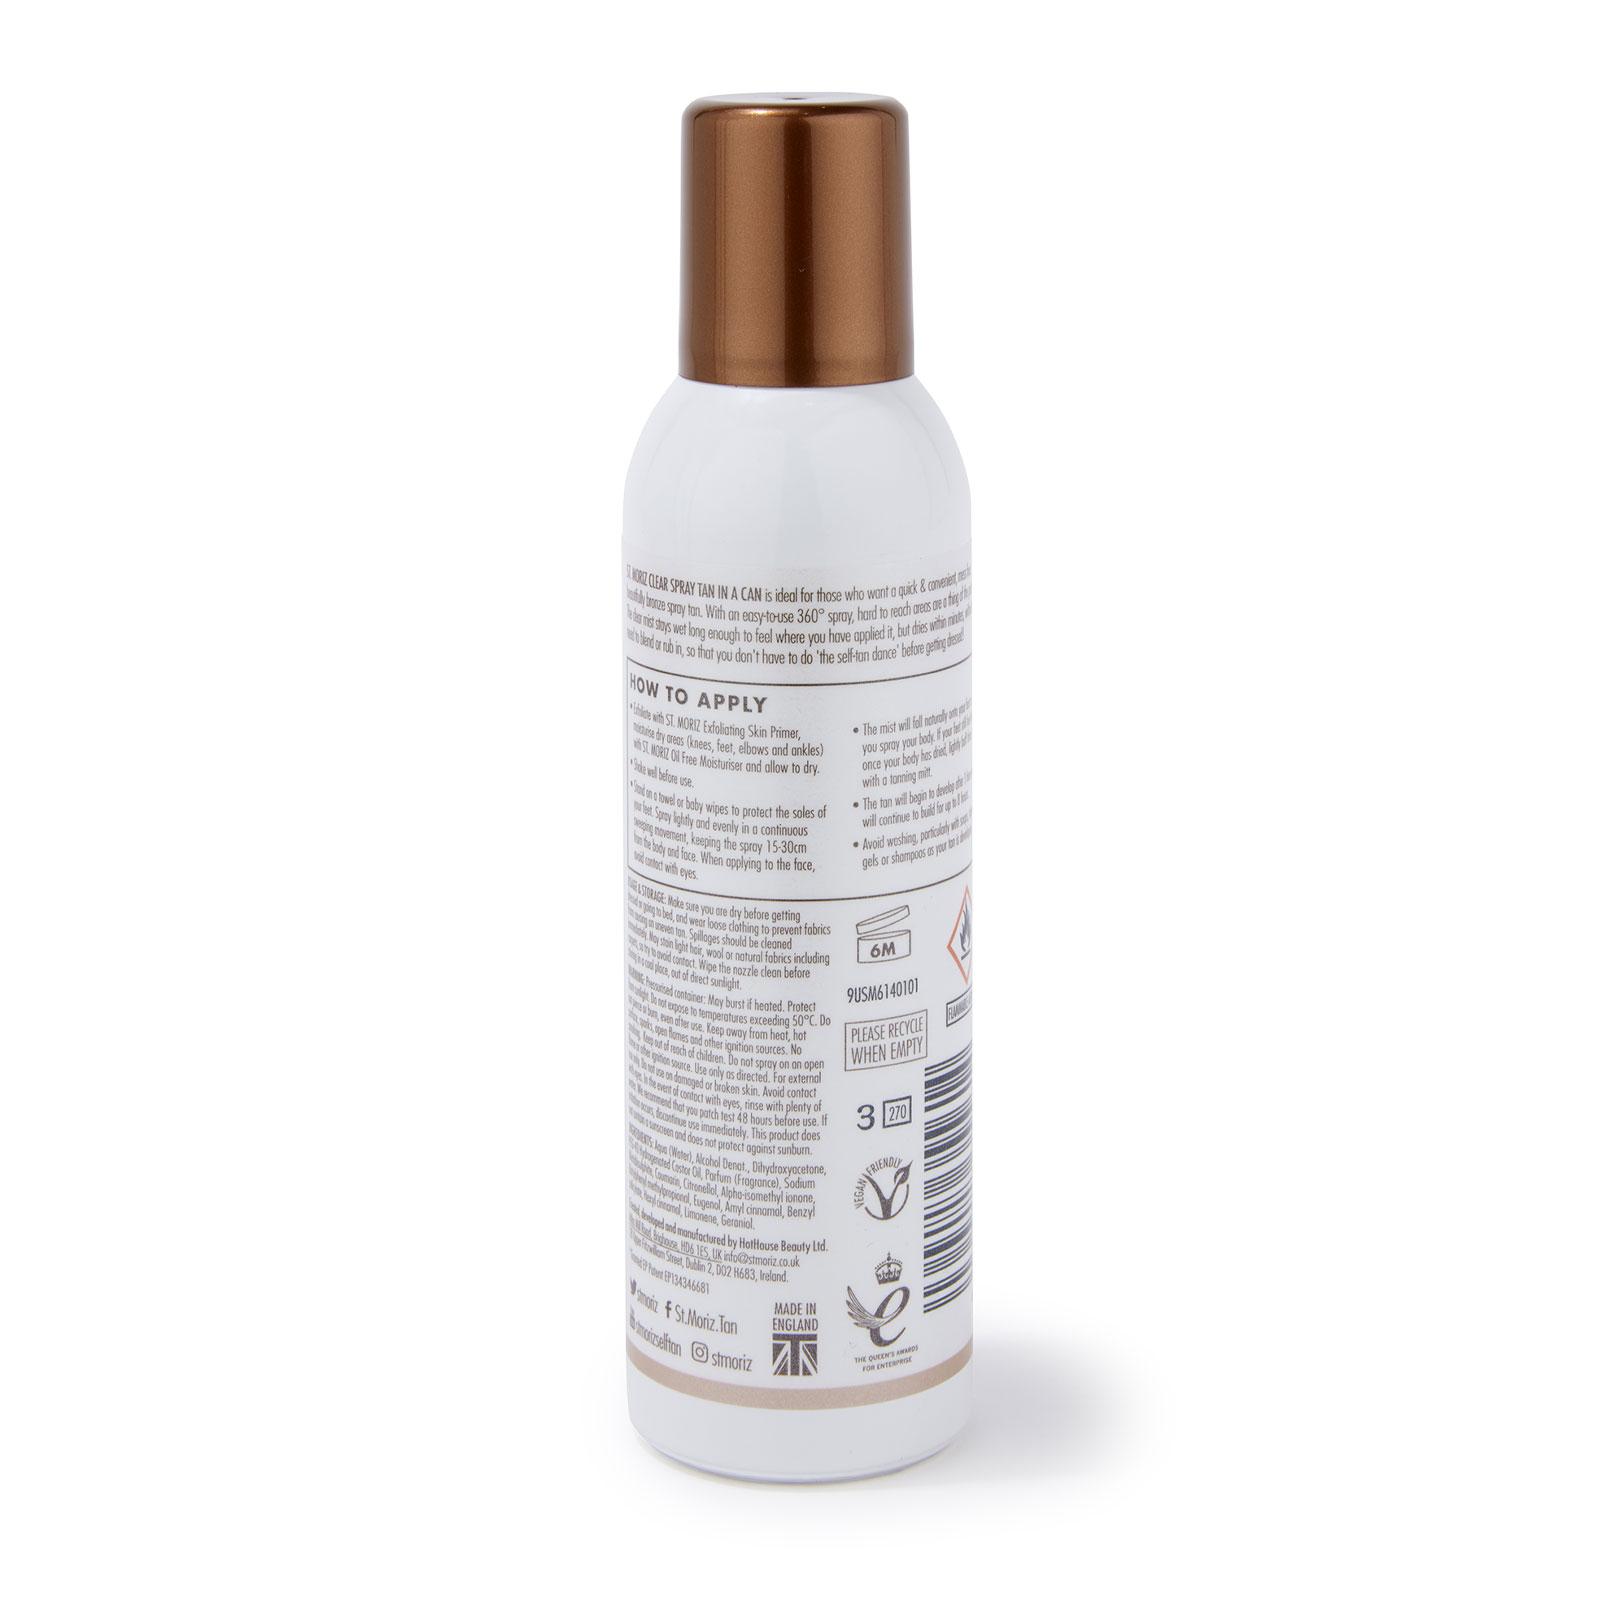 St. Moriz Advanced Pro No Mess Spray Tan in a Can 150ml - Feelunique